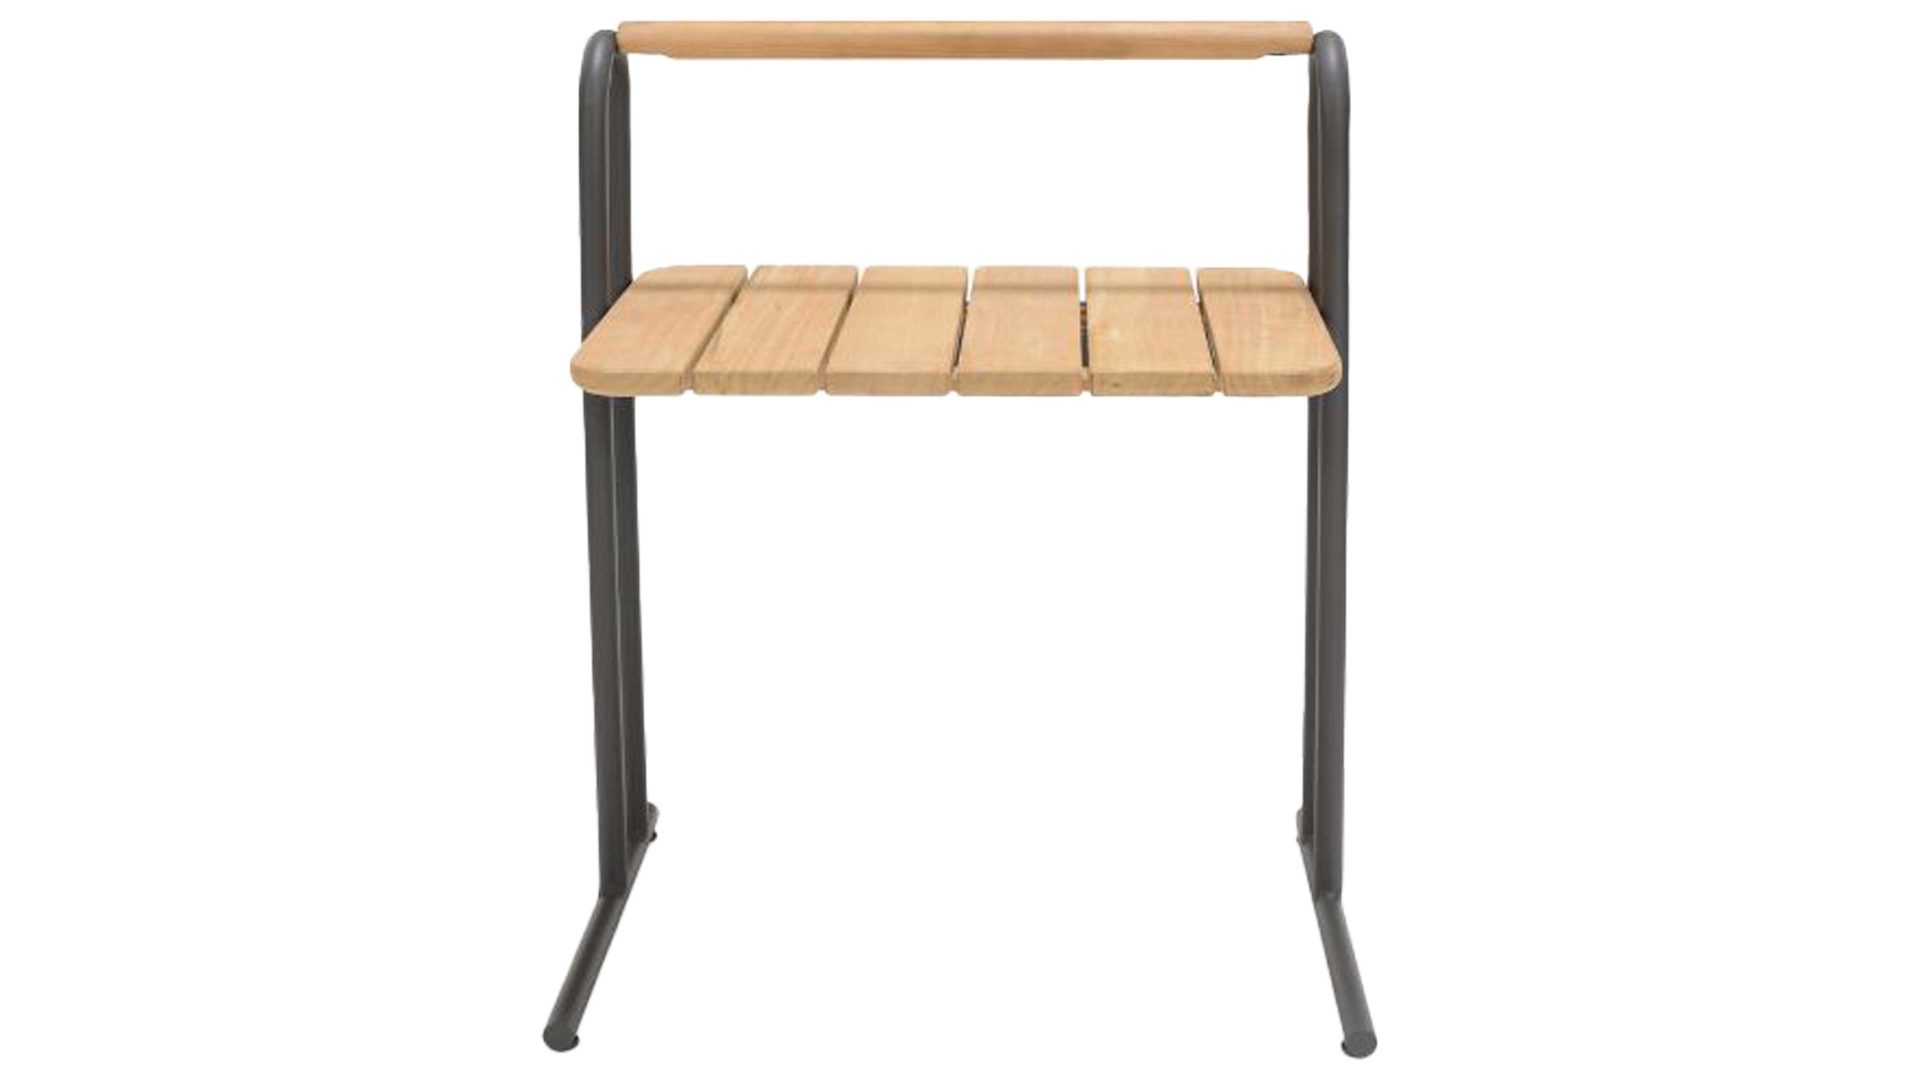 Gartentisch Scancom aus Holz in Holzfarben LifestyleGarden® Gartenmöbel Serie Topaz - Beistelltisch Teakholz & graues Aluminium - Höhe ca. 68 cm